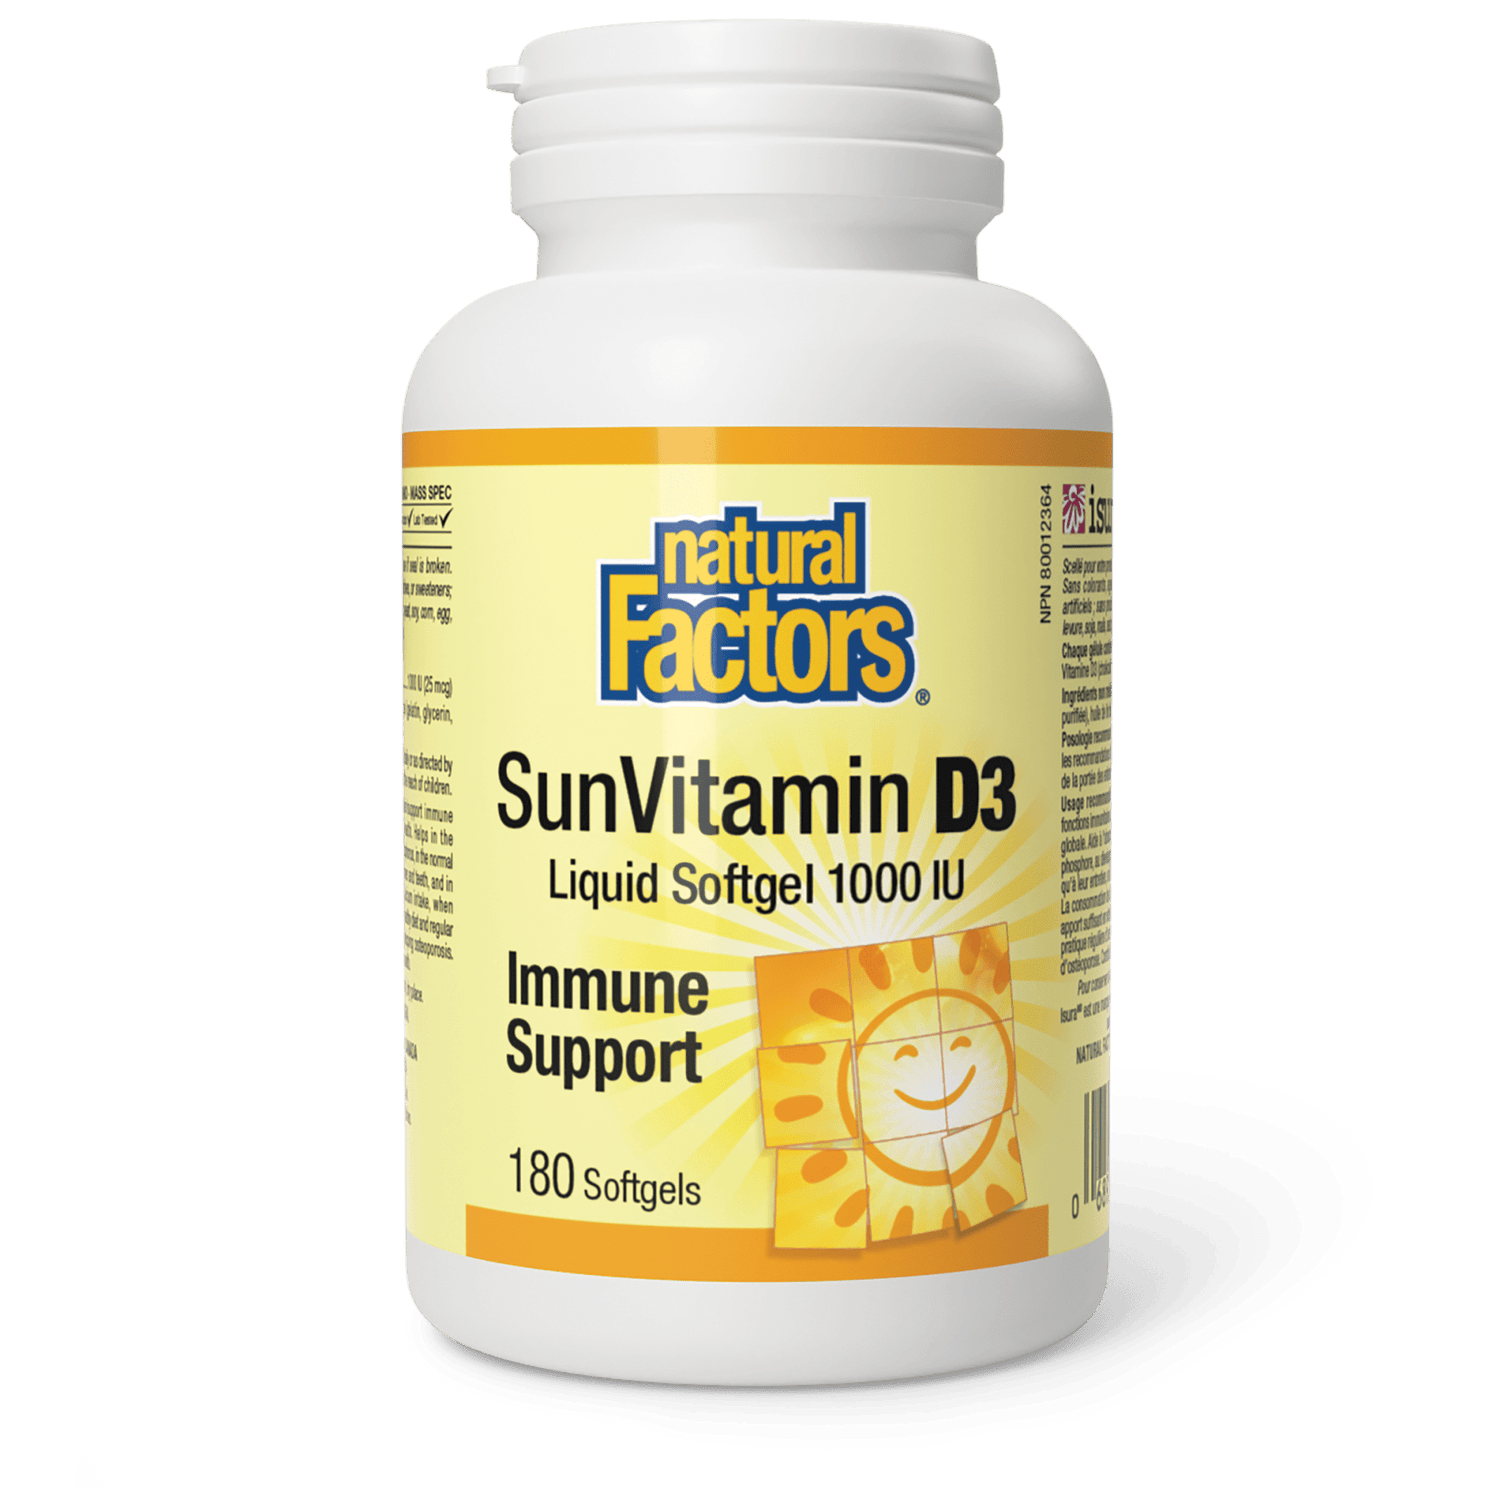 SunVitamin D3 Softgels 1000 IU, Natural Factors|v|image|1054